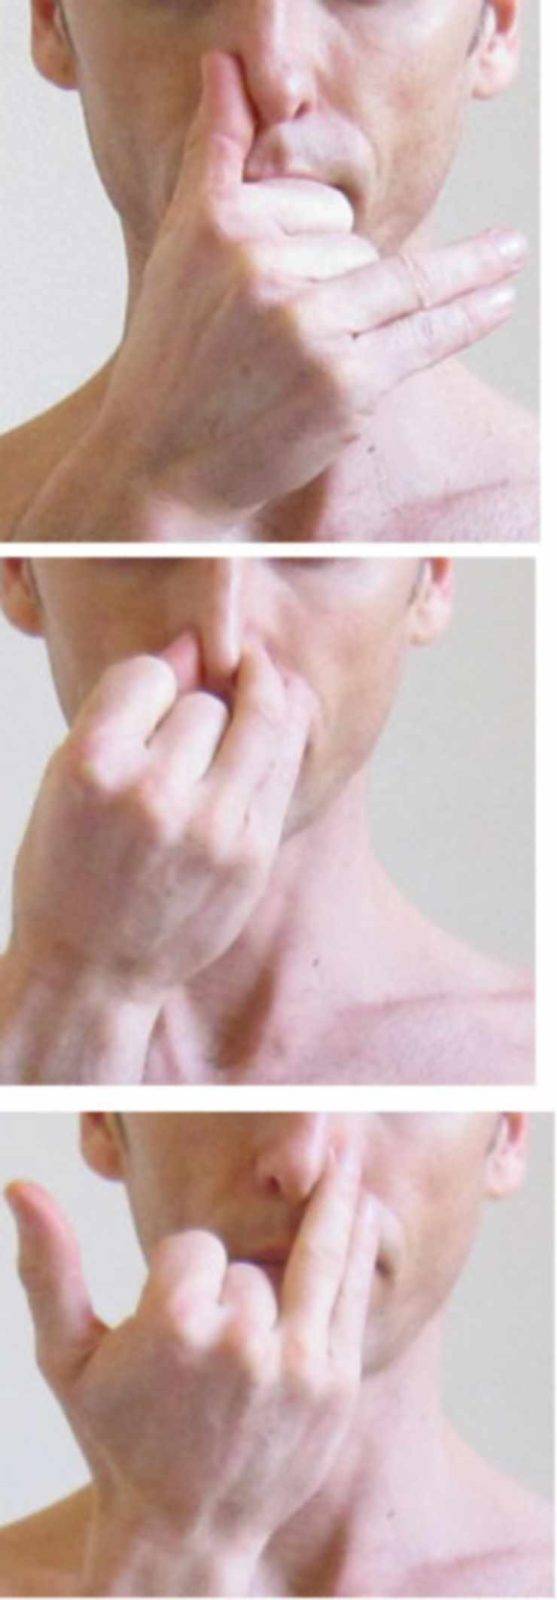 Анулома-вилома - дыхательная практика: описание, особенности, польза и вред